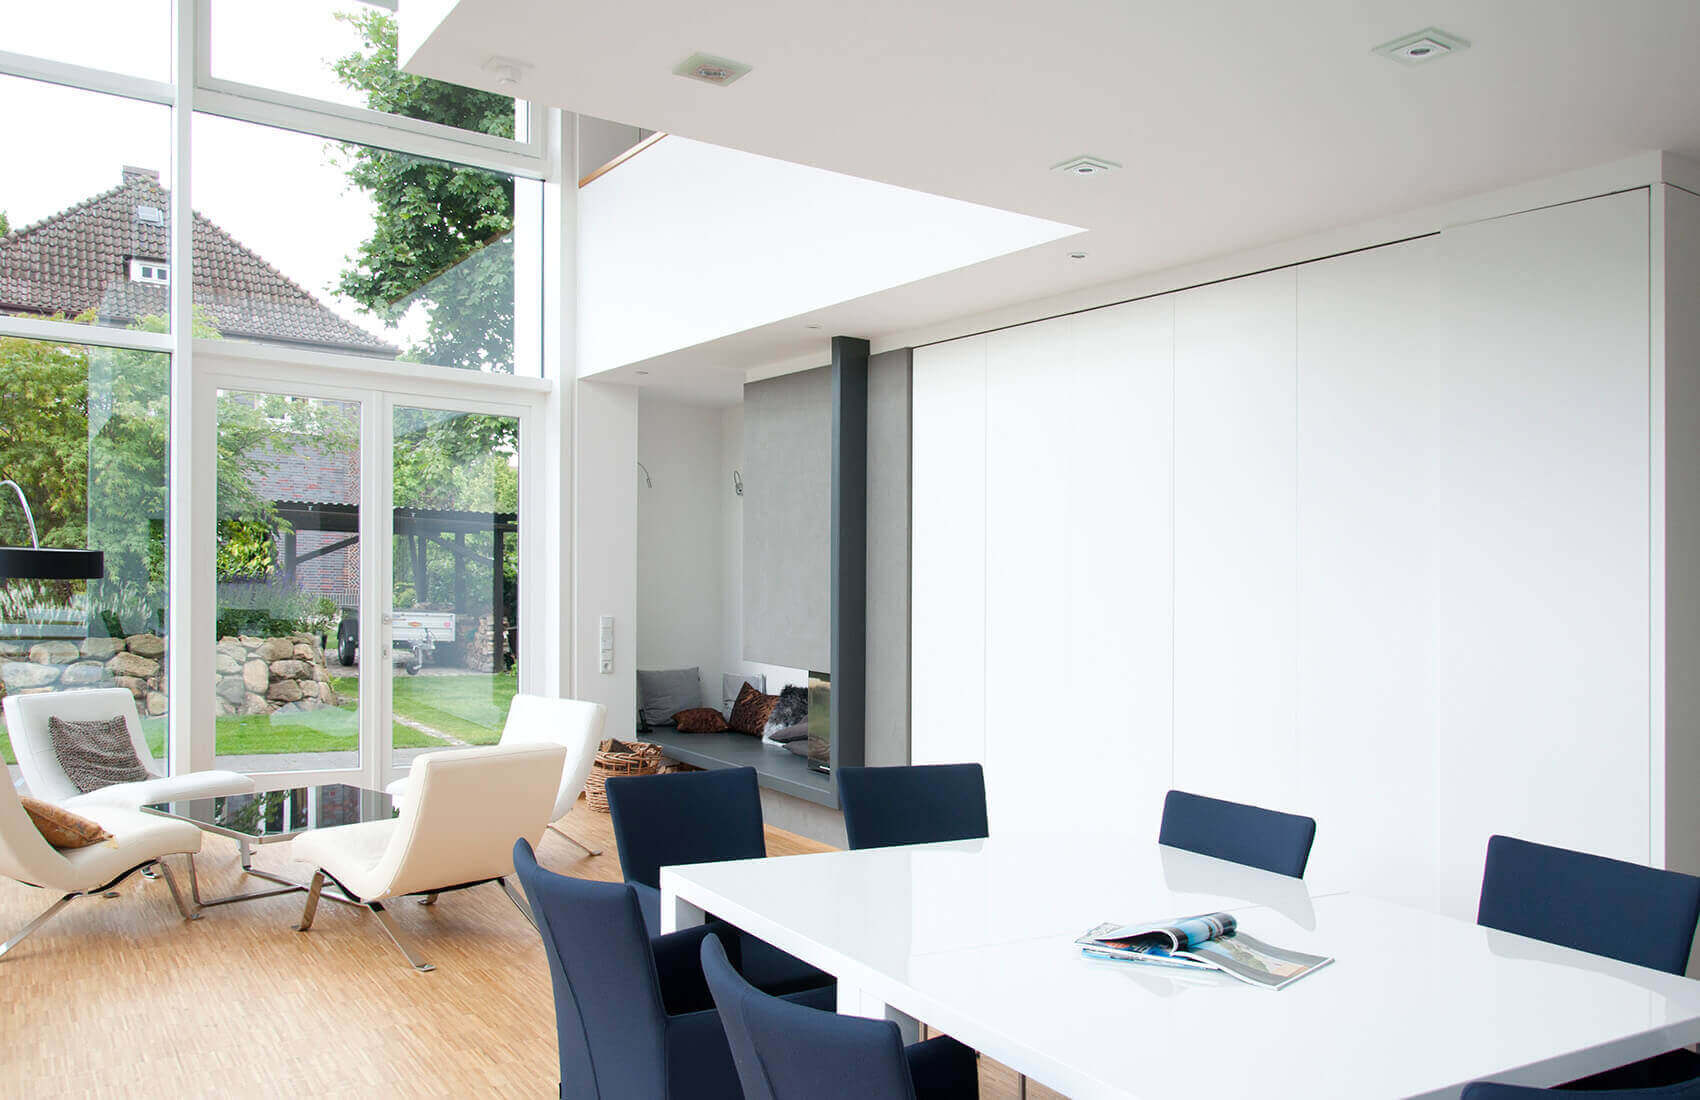 Wohnbereich im Bauhausstil | Moderne Innenarchitektur